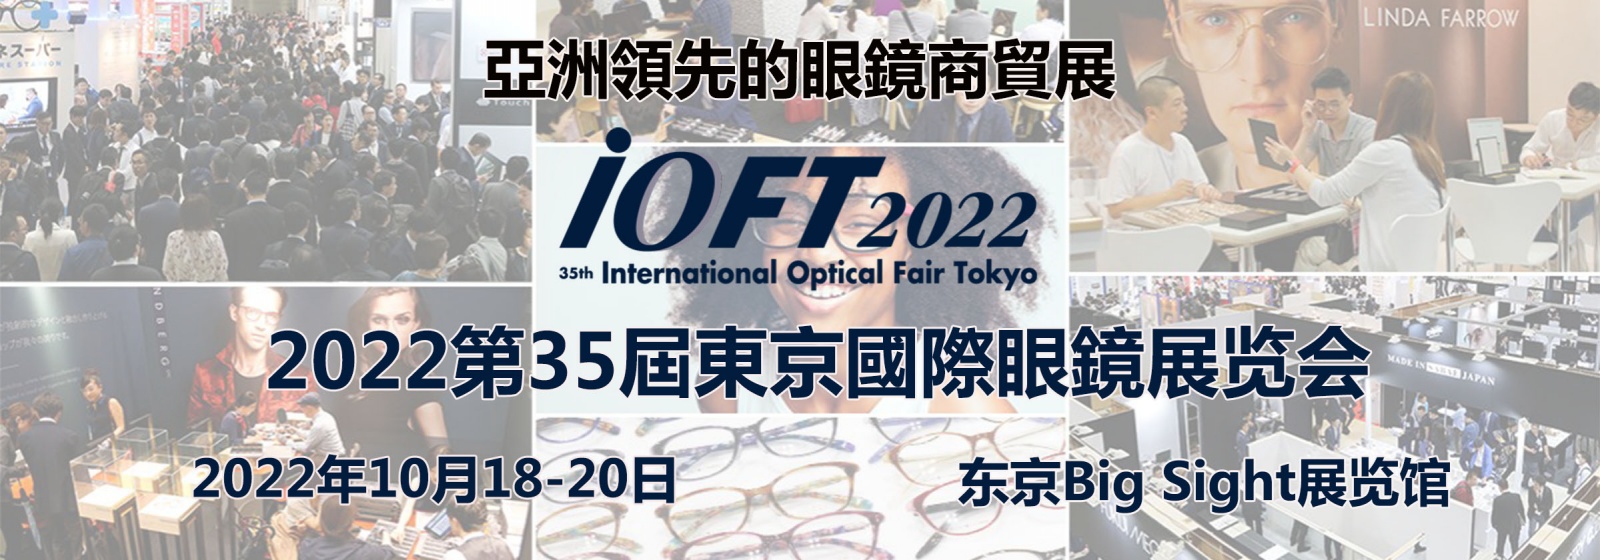 2022年日本眼镜及镜架展